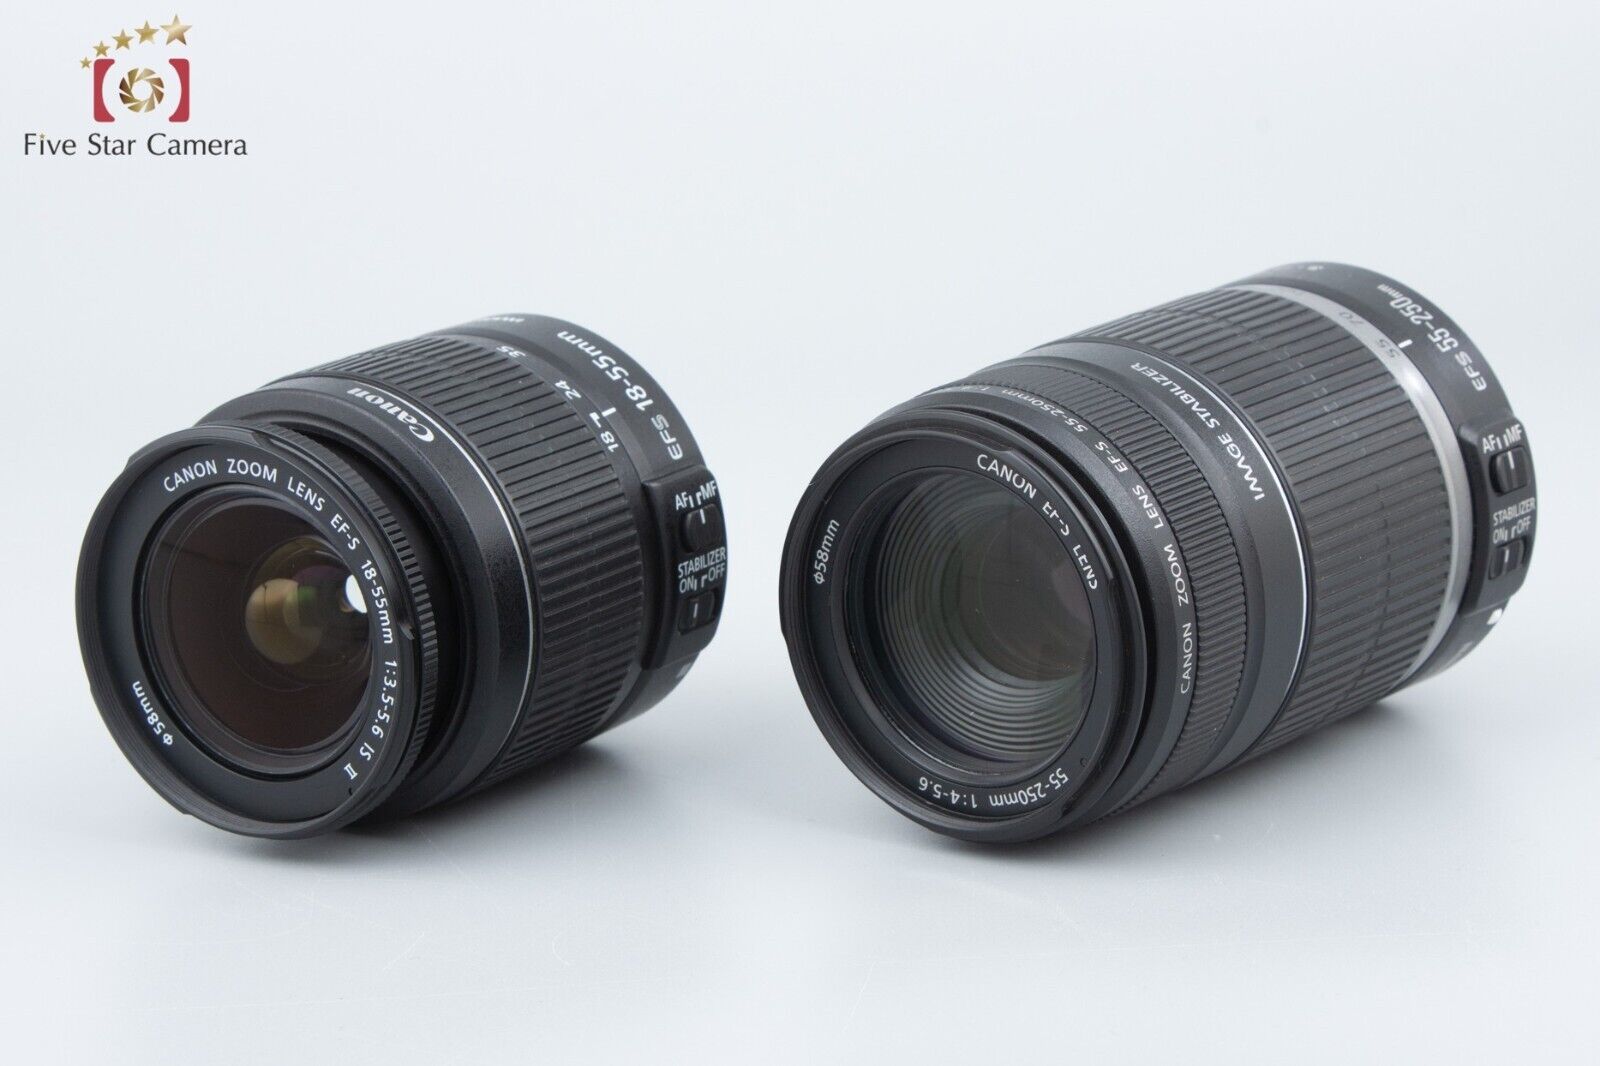 "Count 4,845" Canon EOS Kiss X5 / Rebel T3i / 600D 18.0 MP 18-55 55-250 Lenses